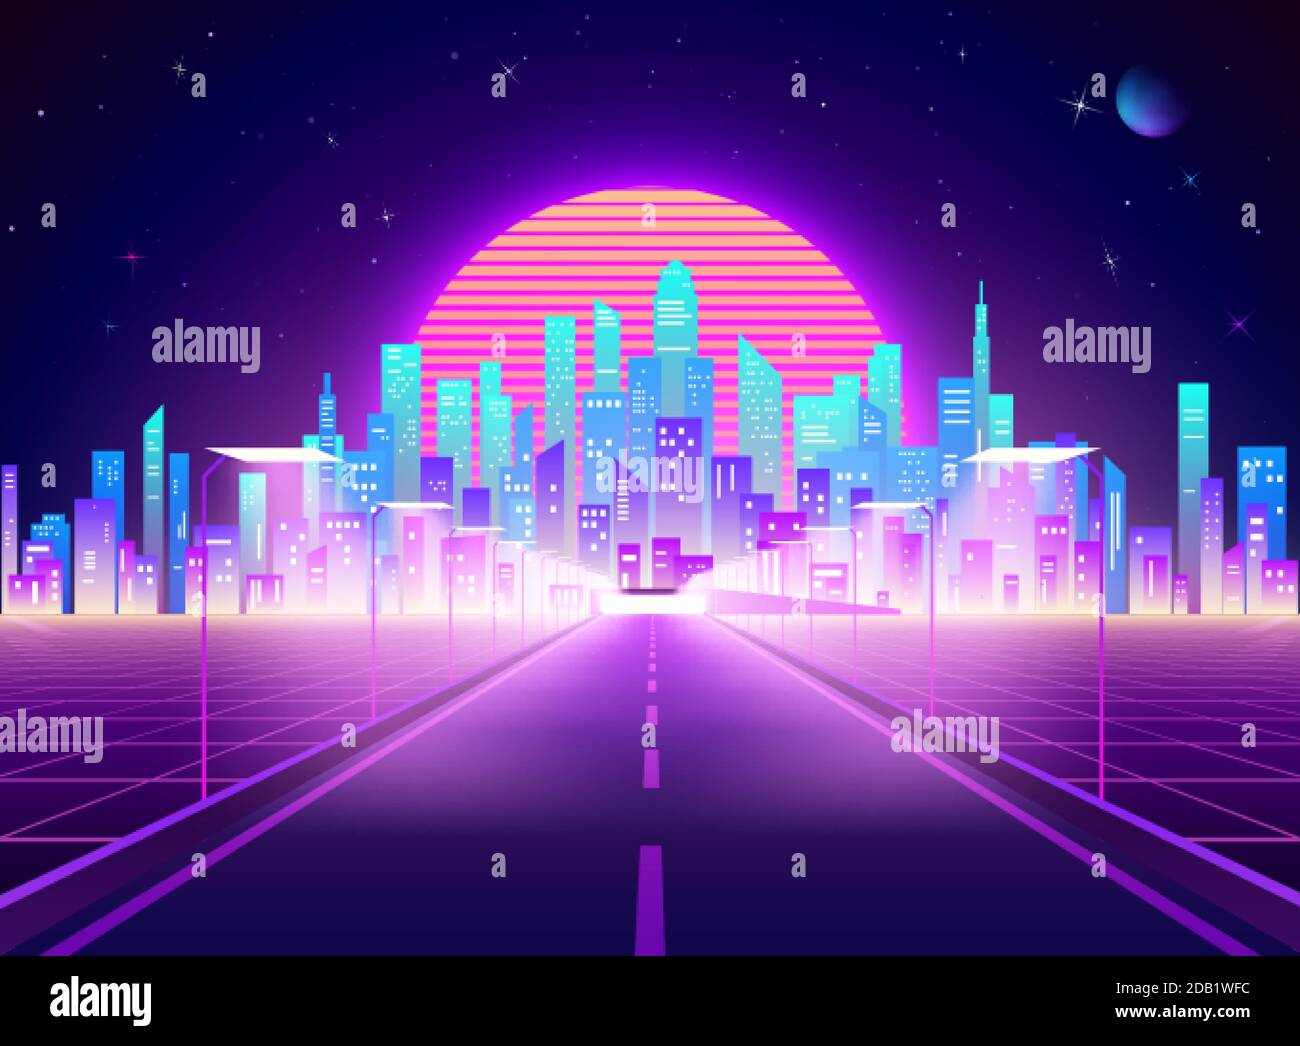 Autostrada per la città futuristica Cyberpunk. Paesaggio della città retrò al neon. Architettura digitale astratta di background fantascientifico. Illustrazione vettoriale Illustrazione Vettoriale